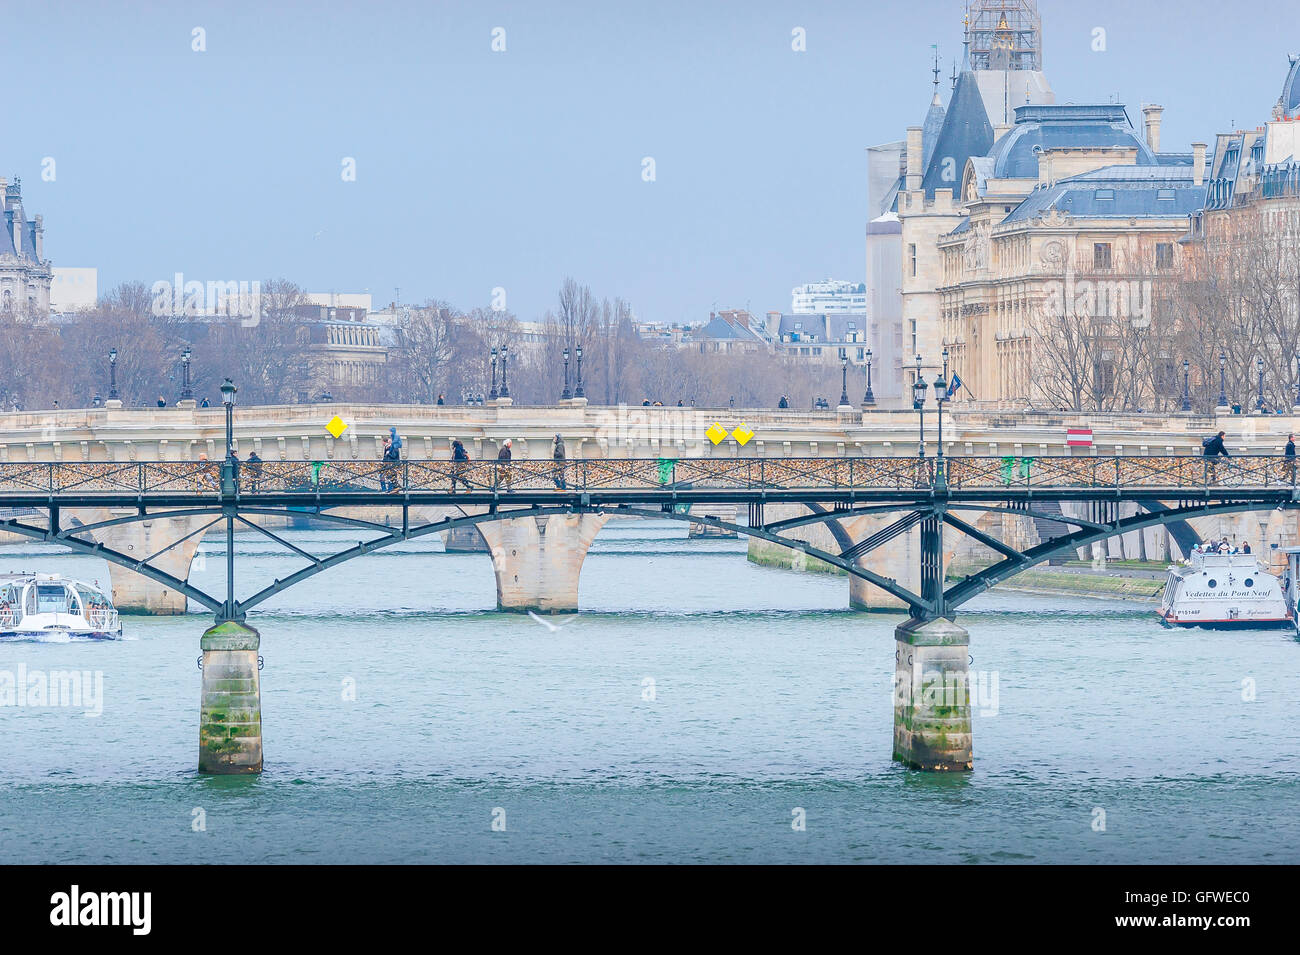 Parigi inverno Senna, vista in inverno di due ponti di Parigi - il Pont Neuf e il Pont des Arts - che attraversa la Senna, Parigi, Francia. Foto Stock